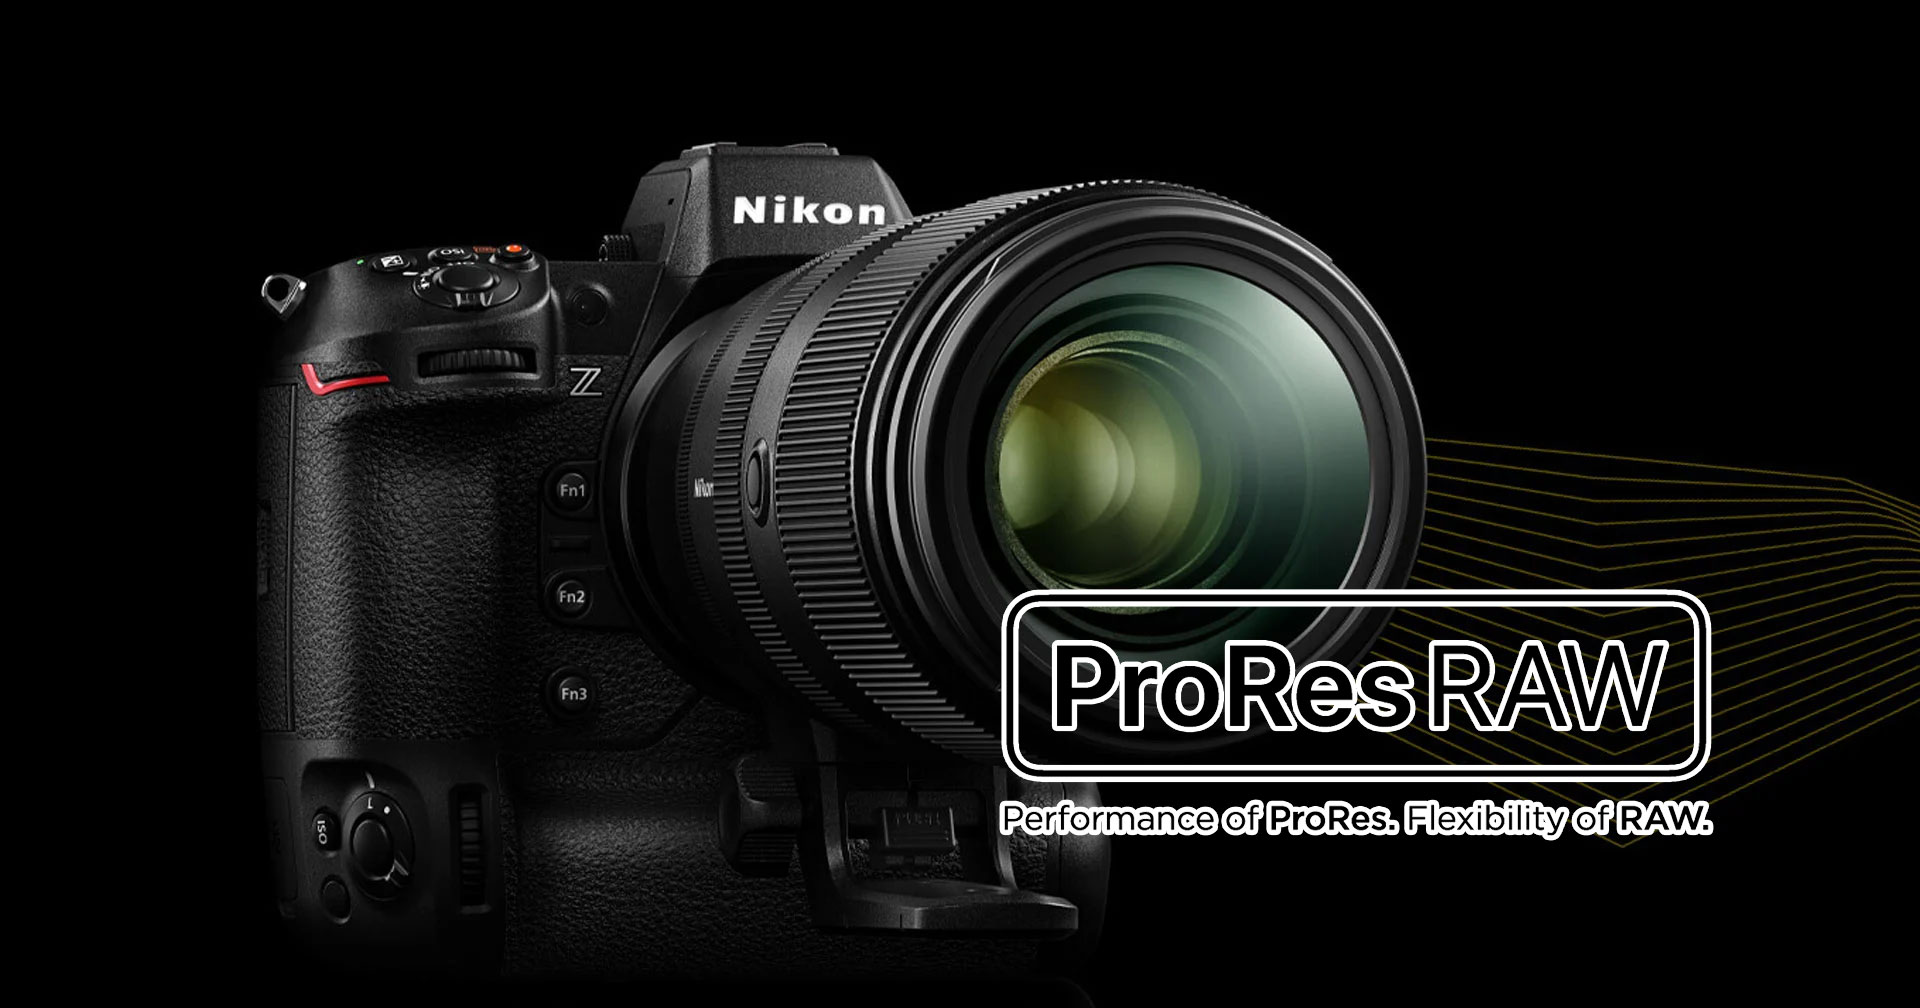 ยืนยัน! Nikon Z9 จะยังคงได้รับการอัปเดตวิดีโอ ProRes RAW ในอนาคต